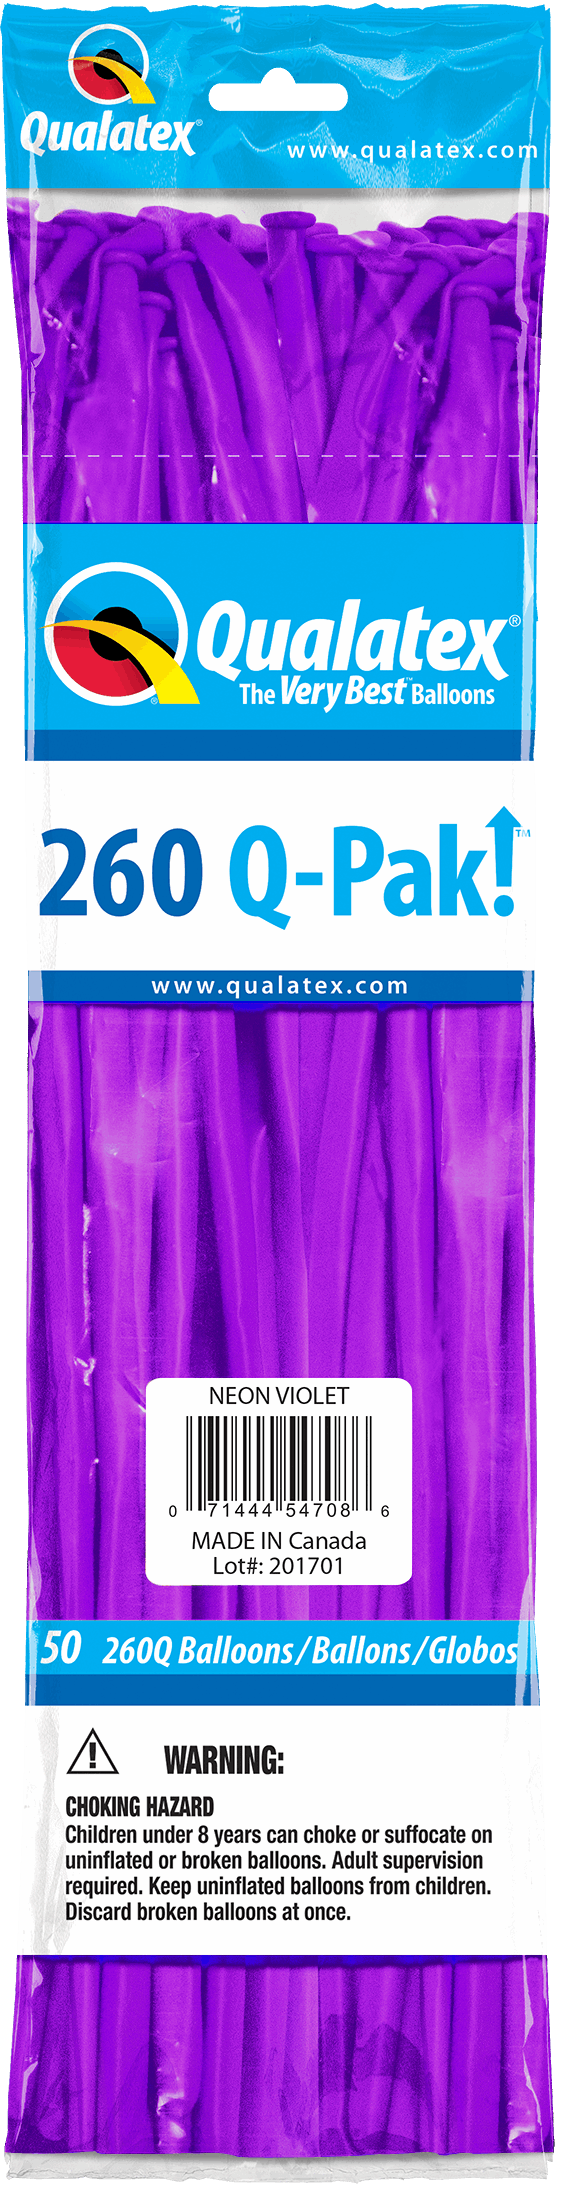 Q-Pak Poche de 50 ballons 260Q Qualatex 100% biodégradables